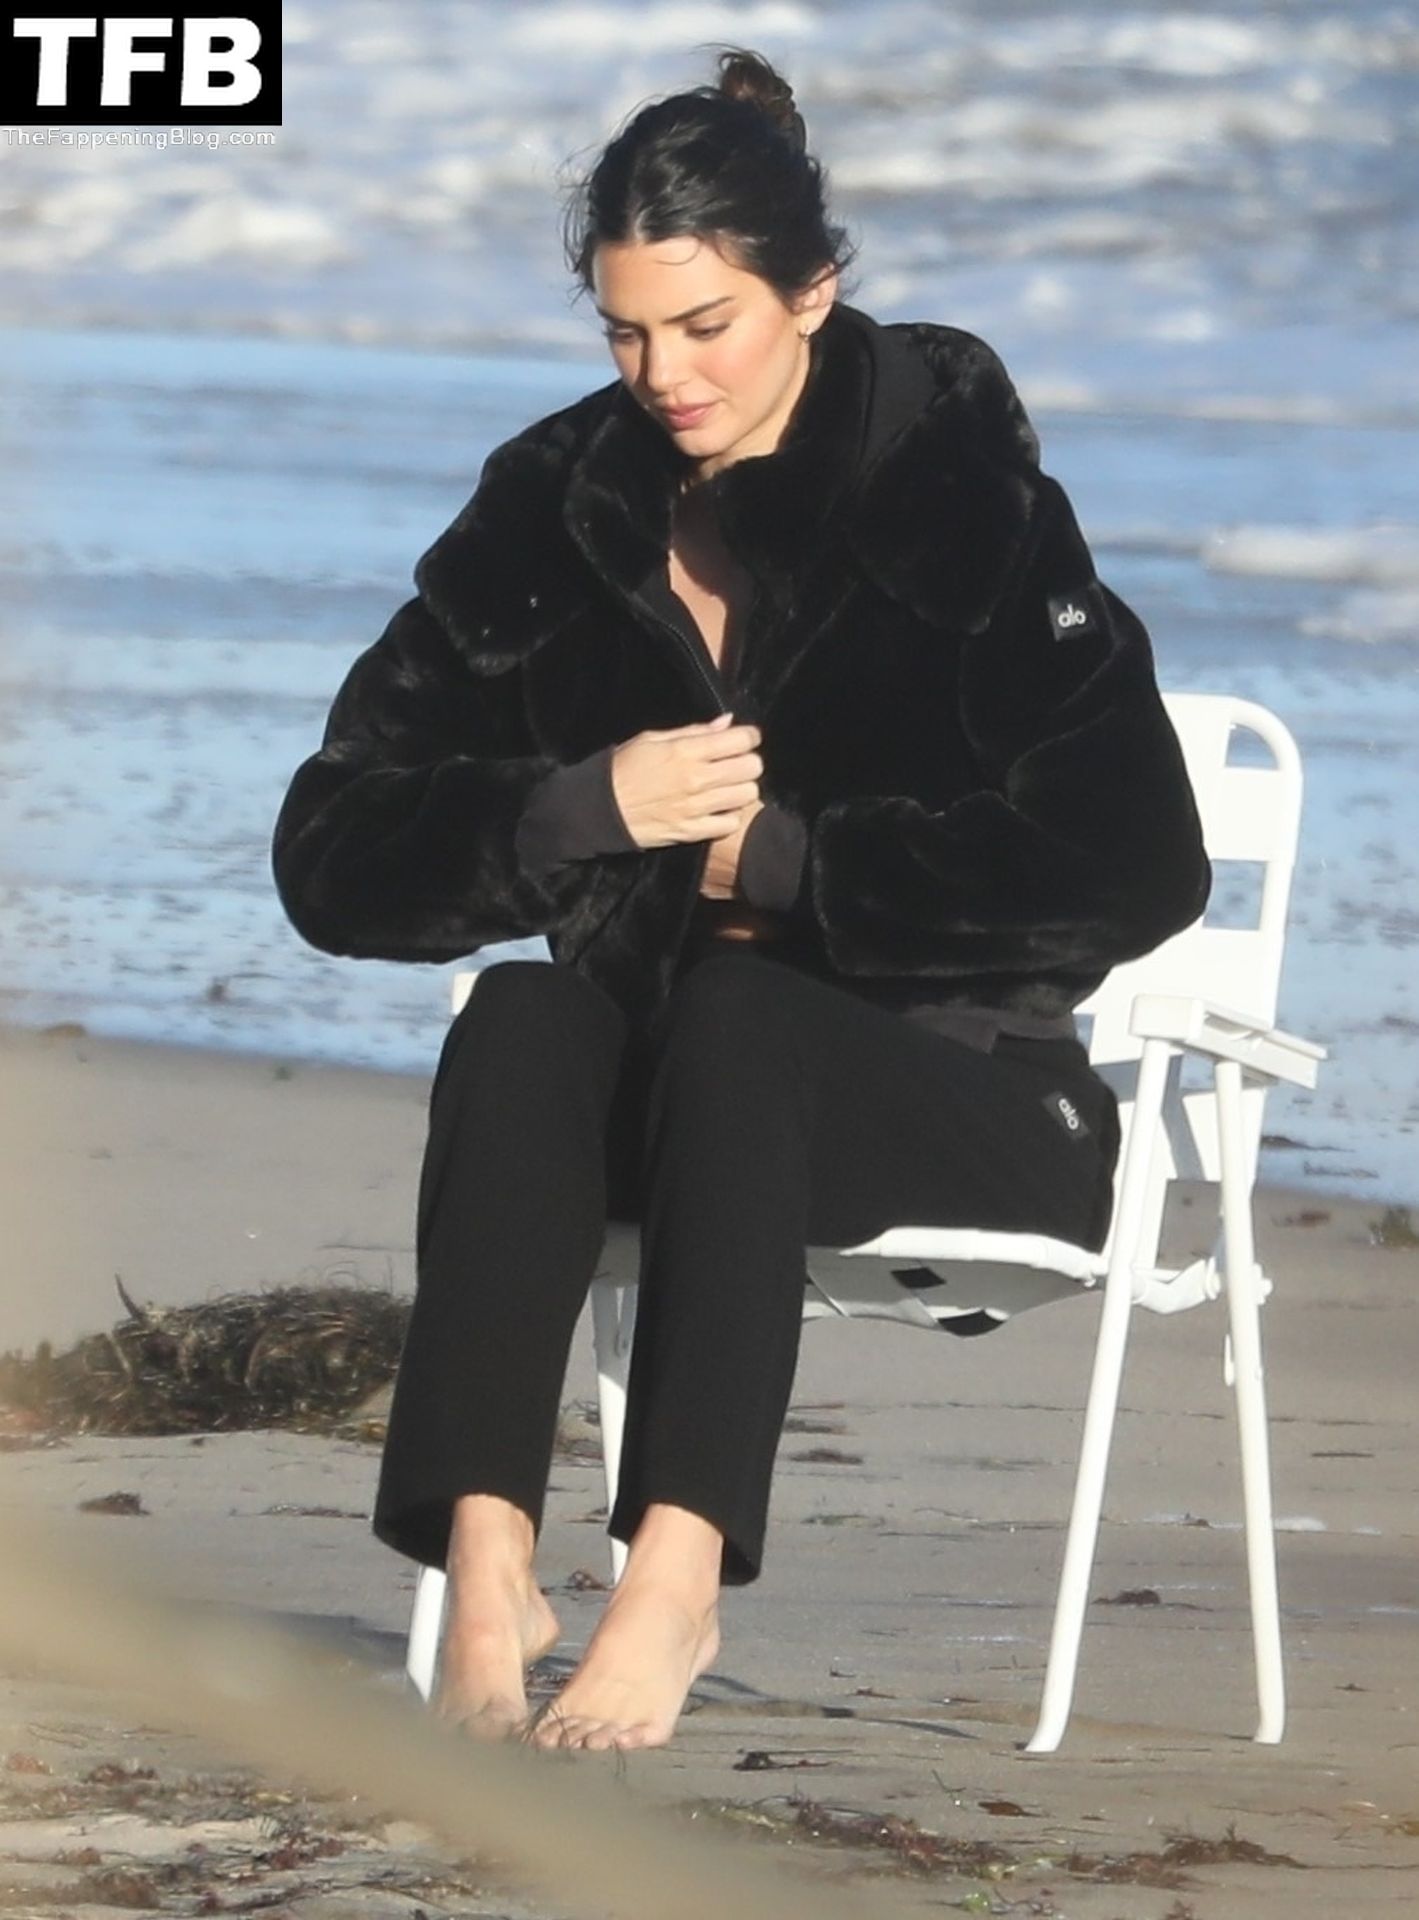 Kendall-Jenner-Feet-The-Fappening-Blog-33.jpg